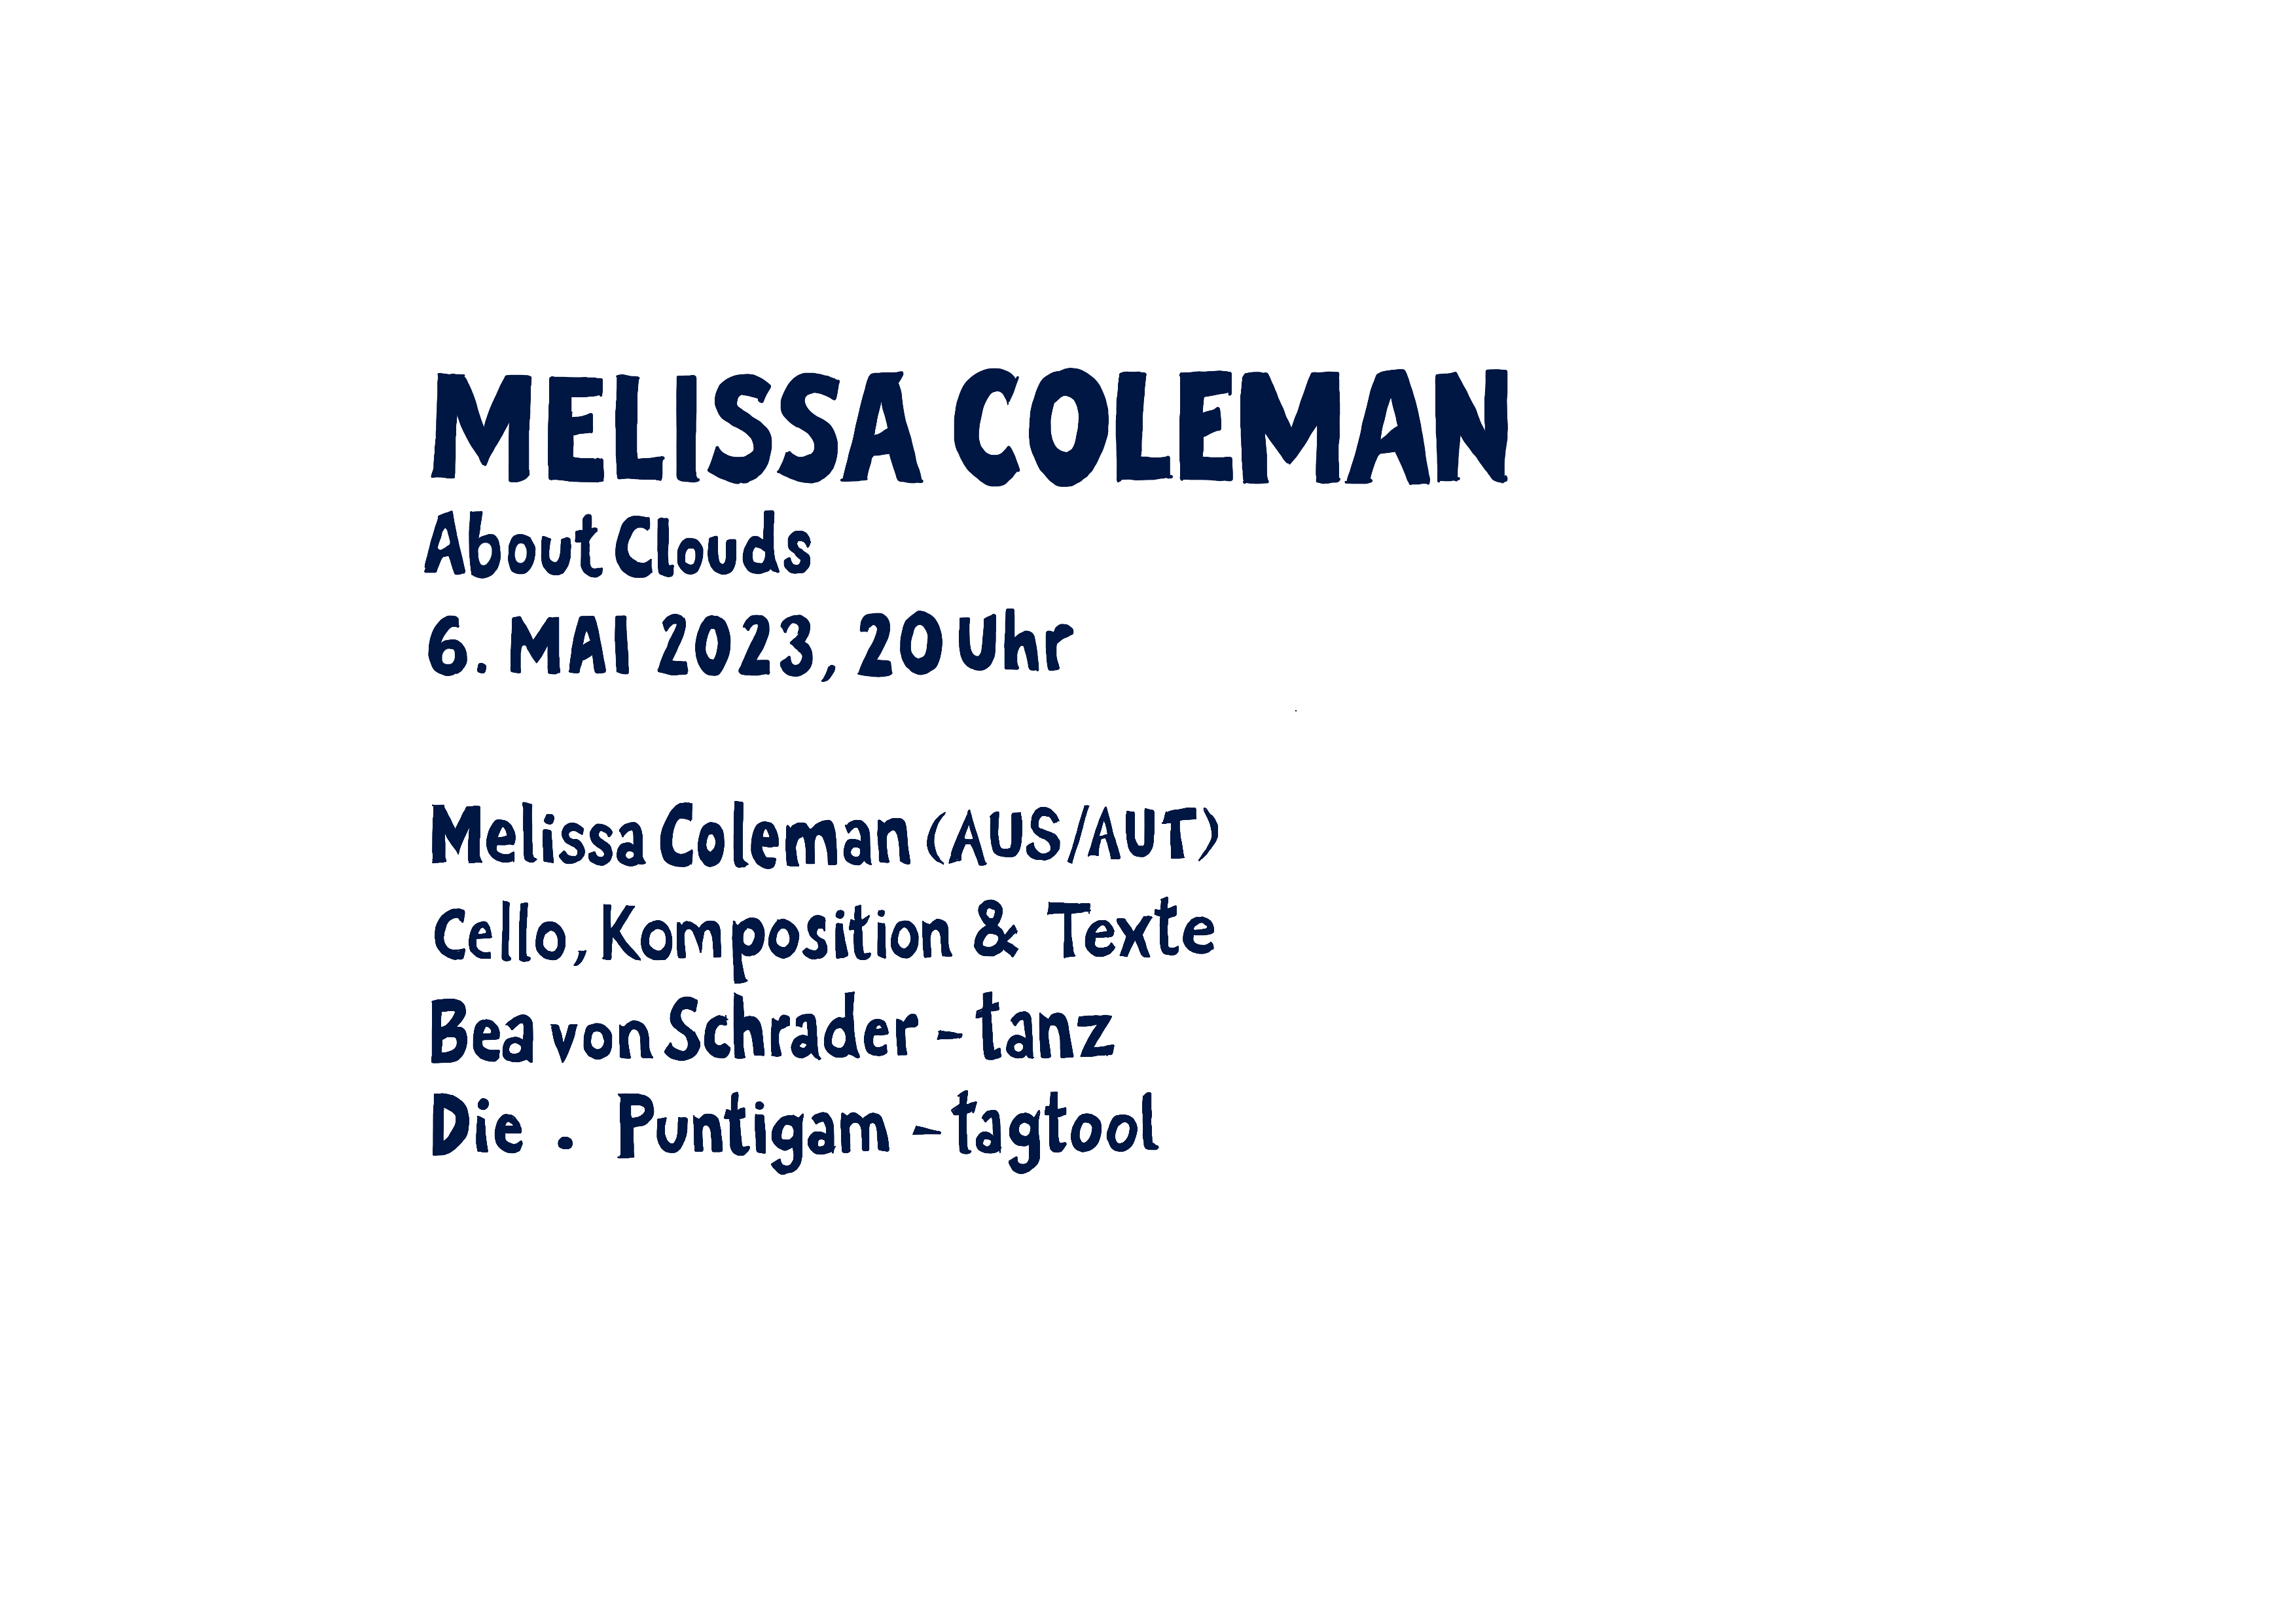 MELISSA COLEMAN - „About Clouds“ 6.Mai 2023, 20 Uhr. Melissa Coleman (Aus/Aut) - Chello, Komposition, Texte; Bea von Schrader - Tanz; Die.Puntigam - Tagtool